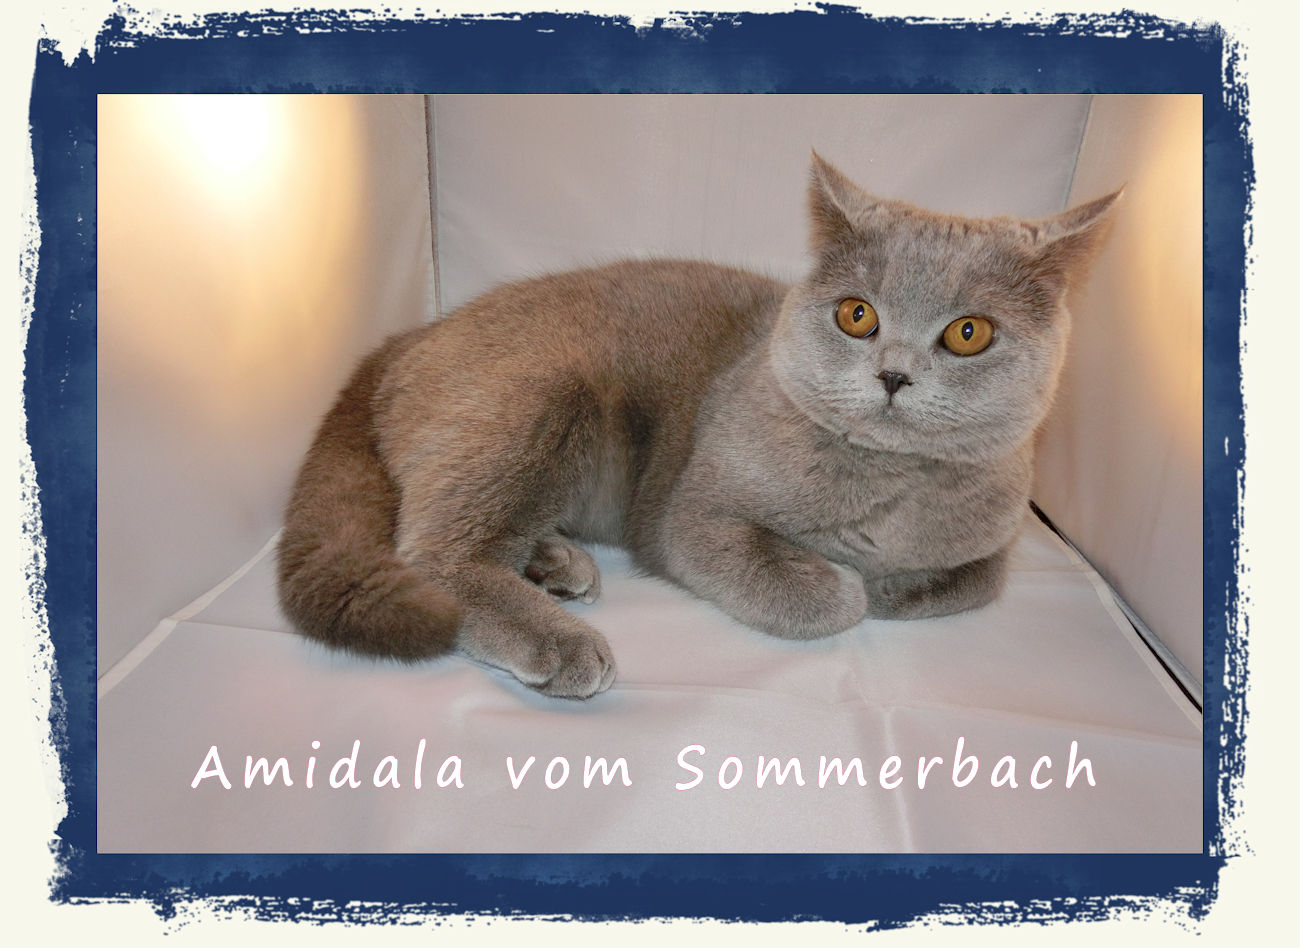 Amidala vom Sommerbach in 03/17